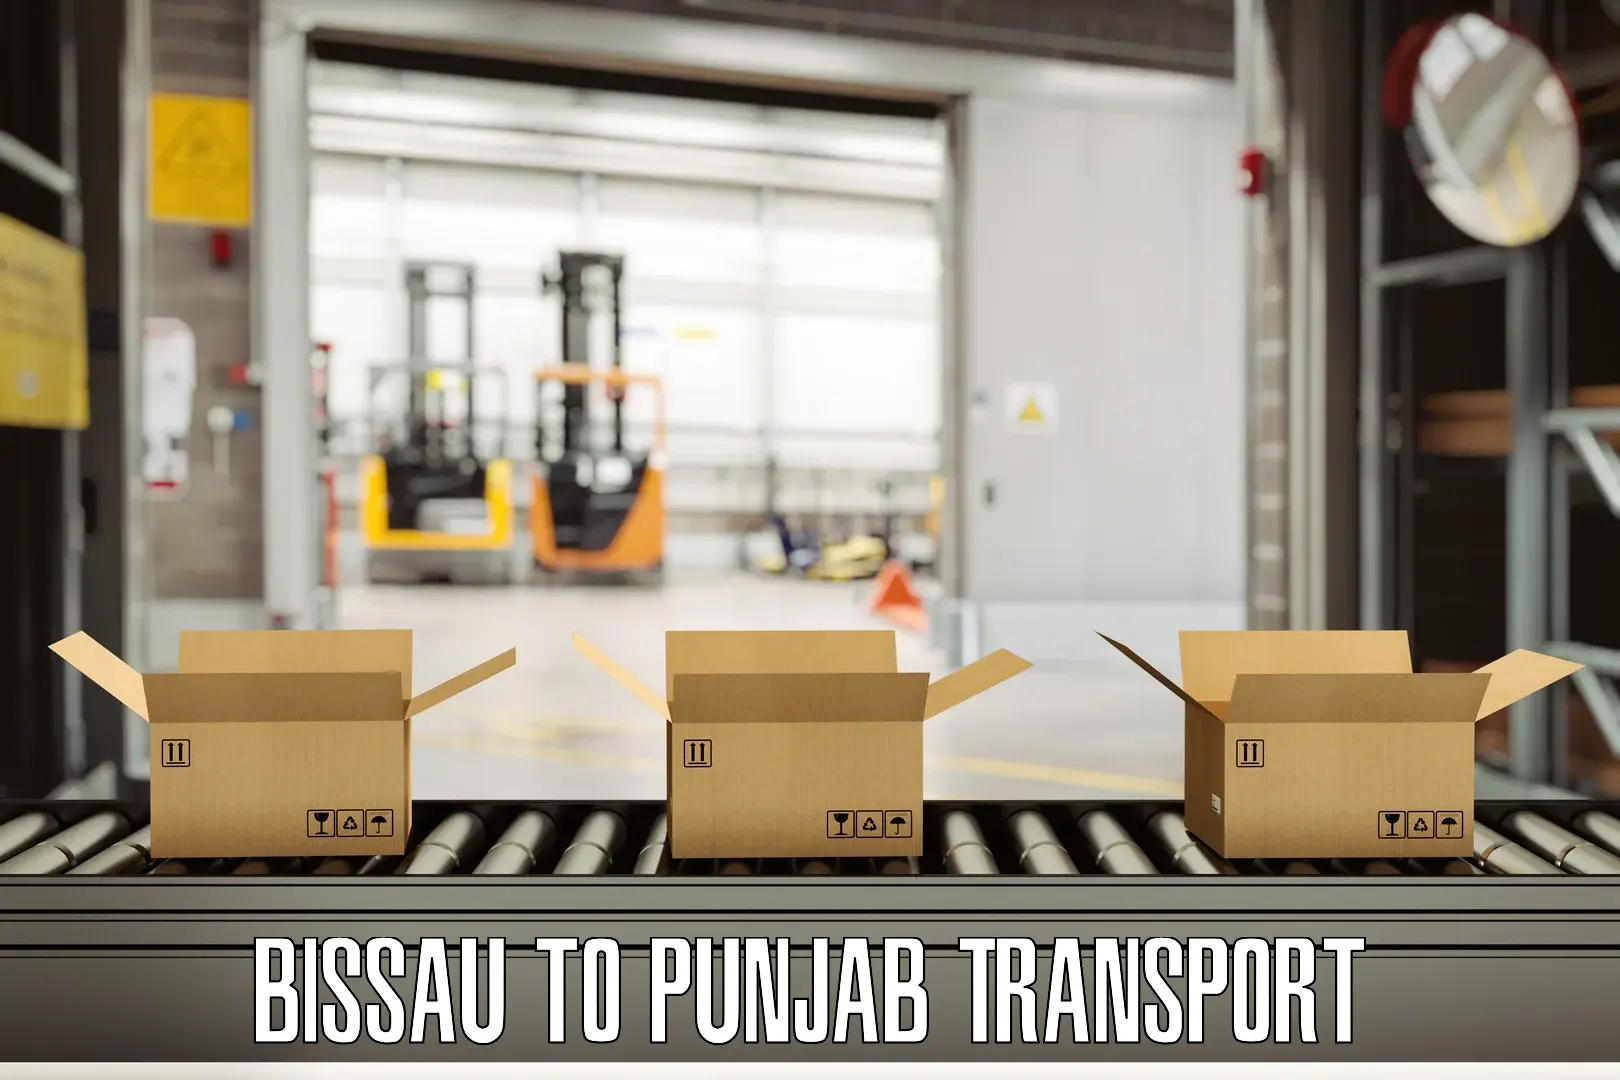 Transport in sharing Bissau to Punjab